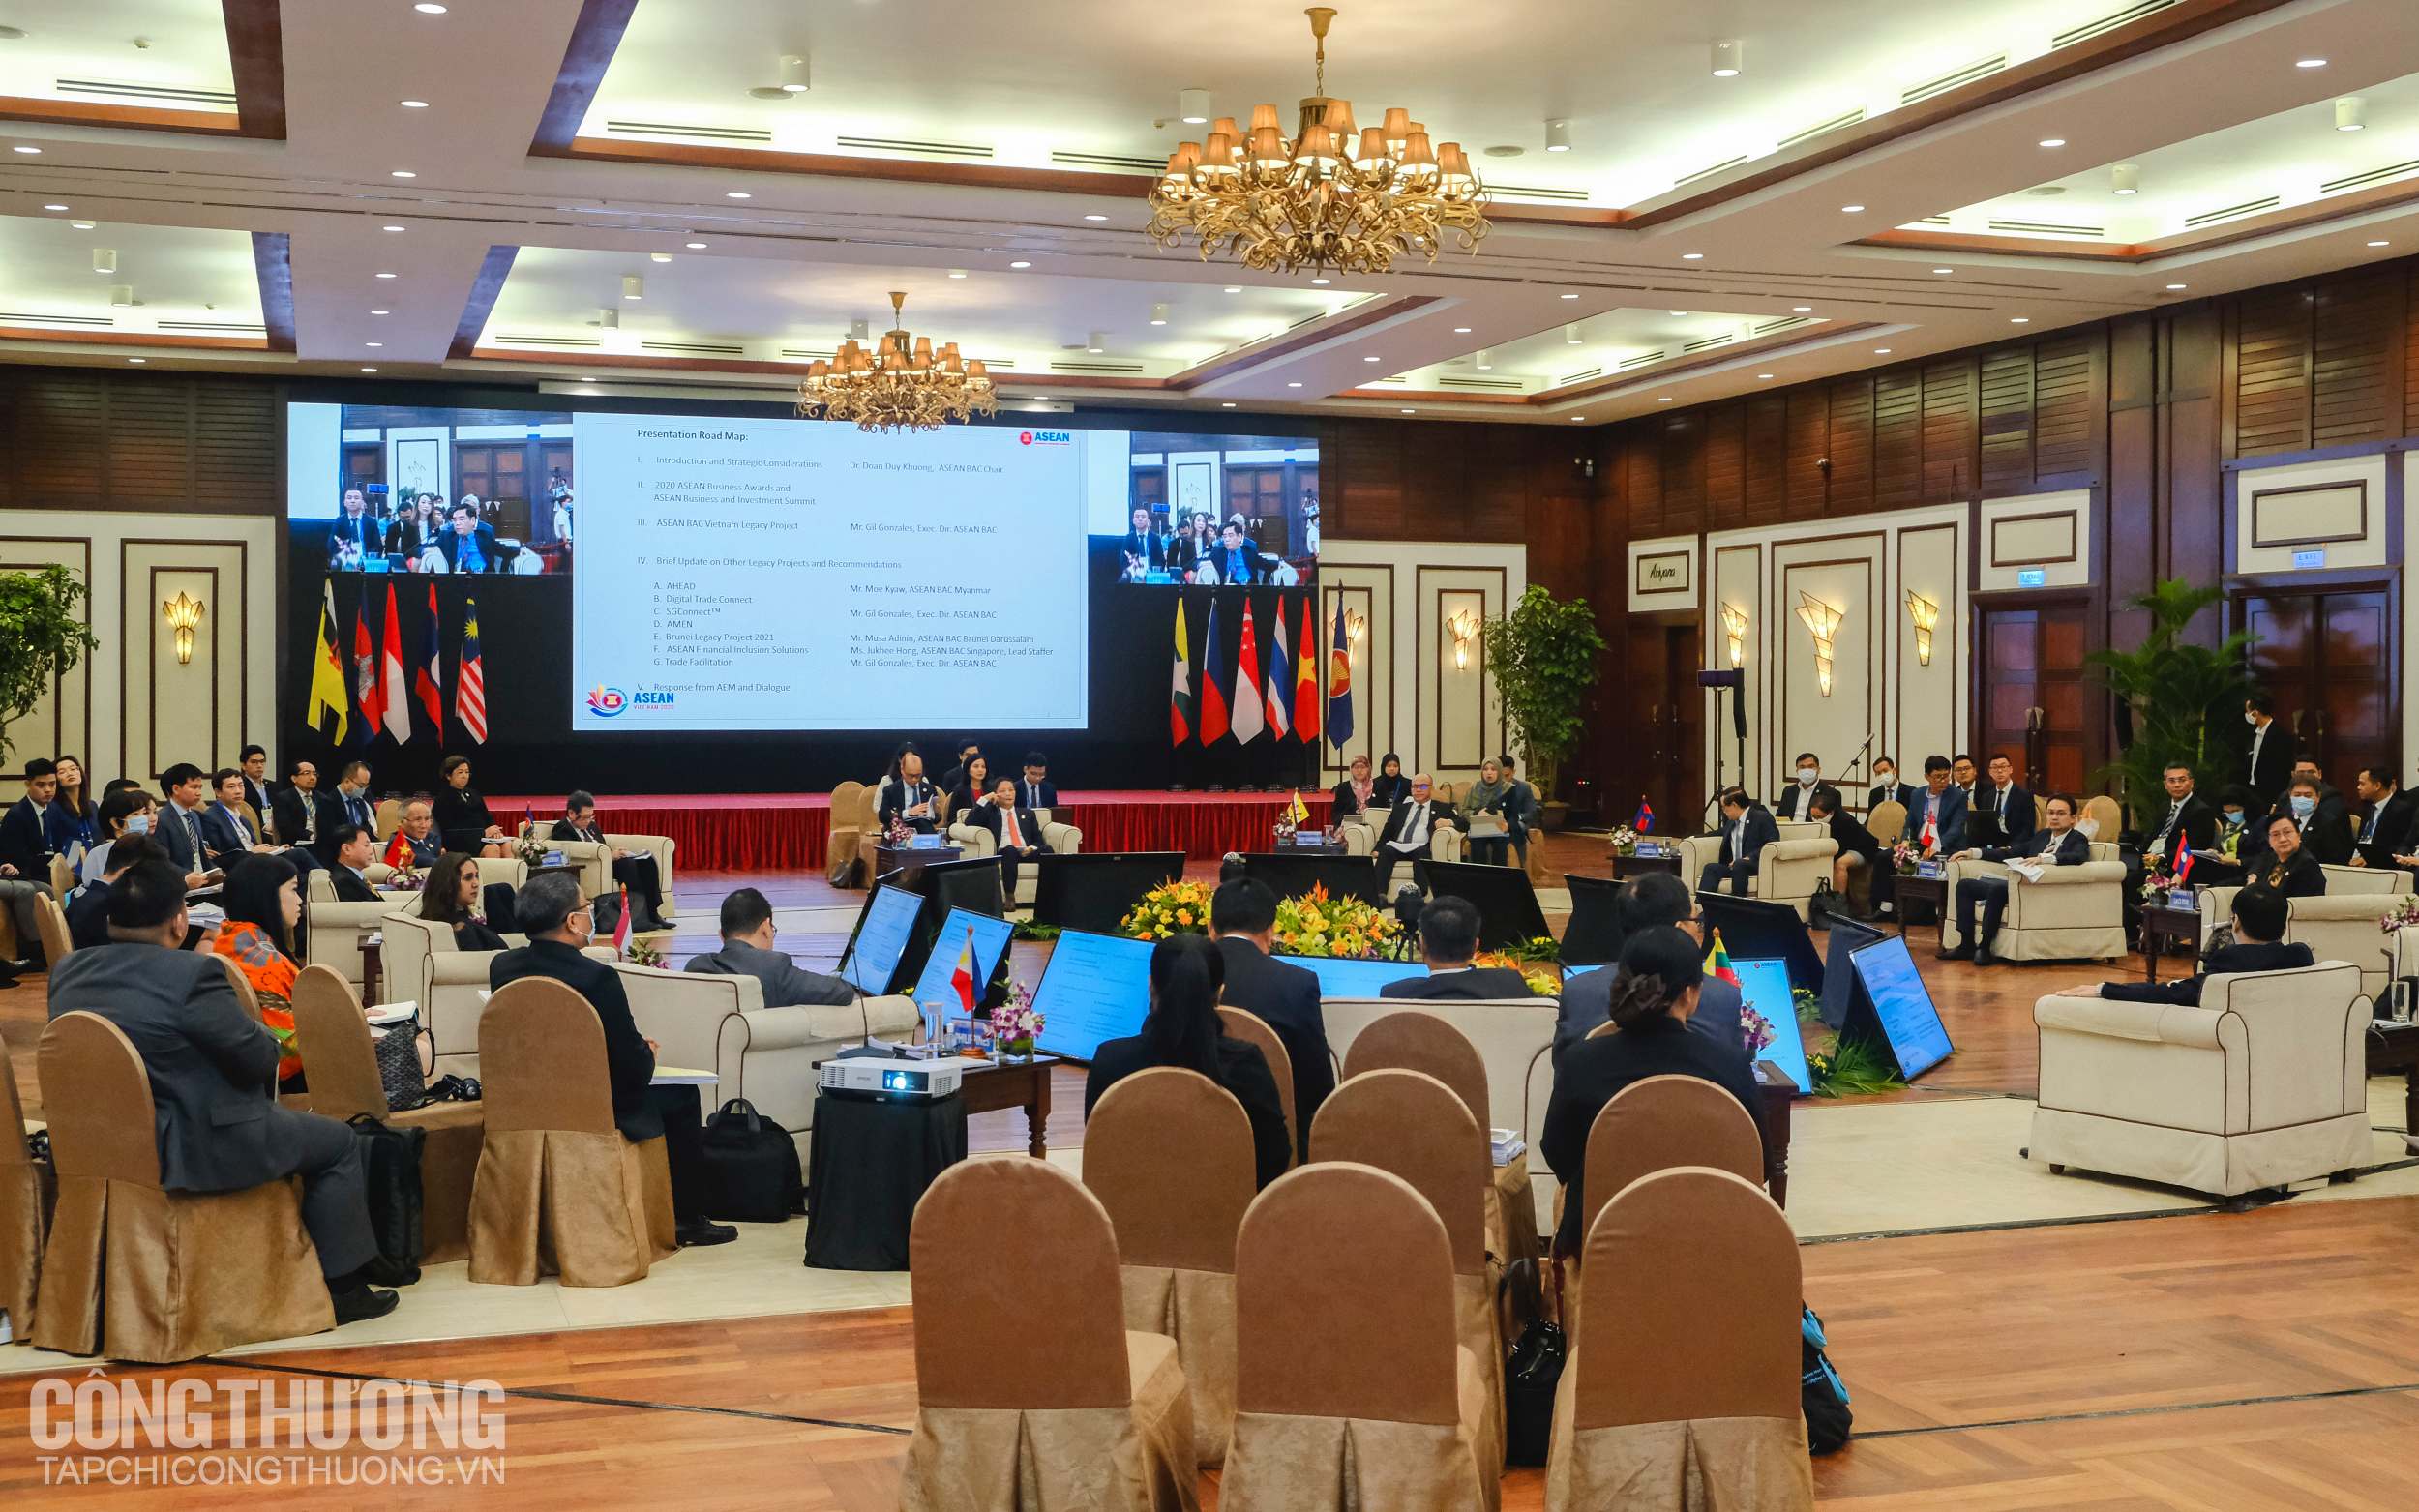 Toàn cảnh Hội nghị Bộ trưởng Kinh tế ASEAN hẹp lần thứ 26 (AEM hẹp 26)